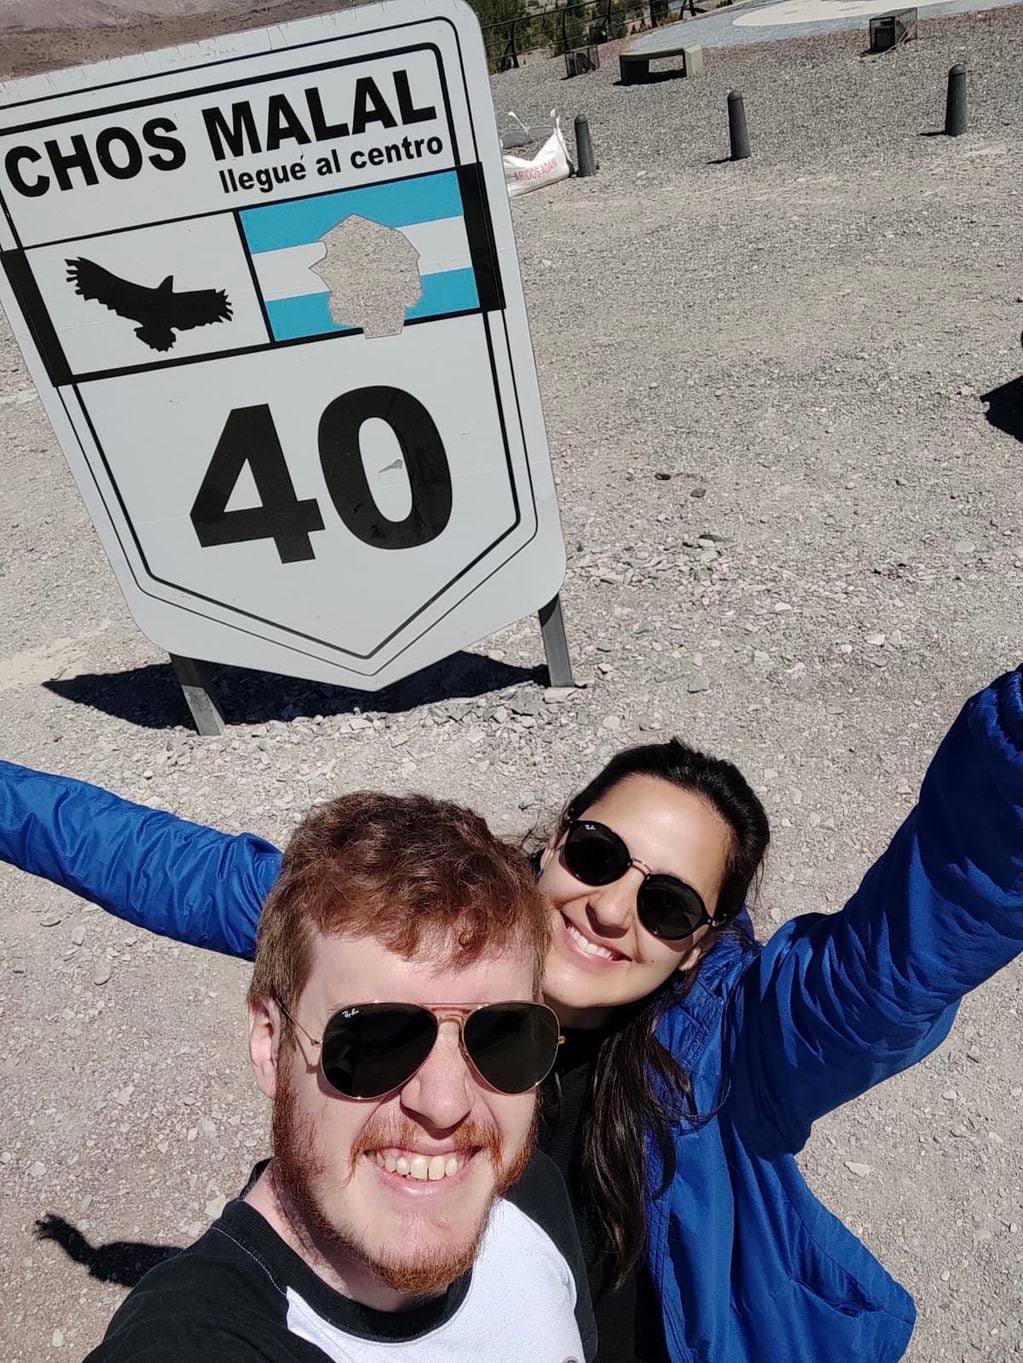 La pareja festejando que llegaron a "la mítica ruta 40", uno de los objetivos de su viaje.